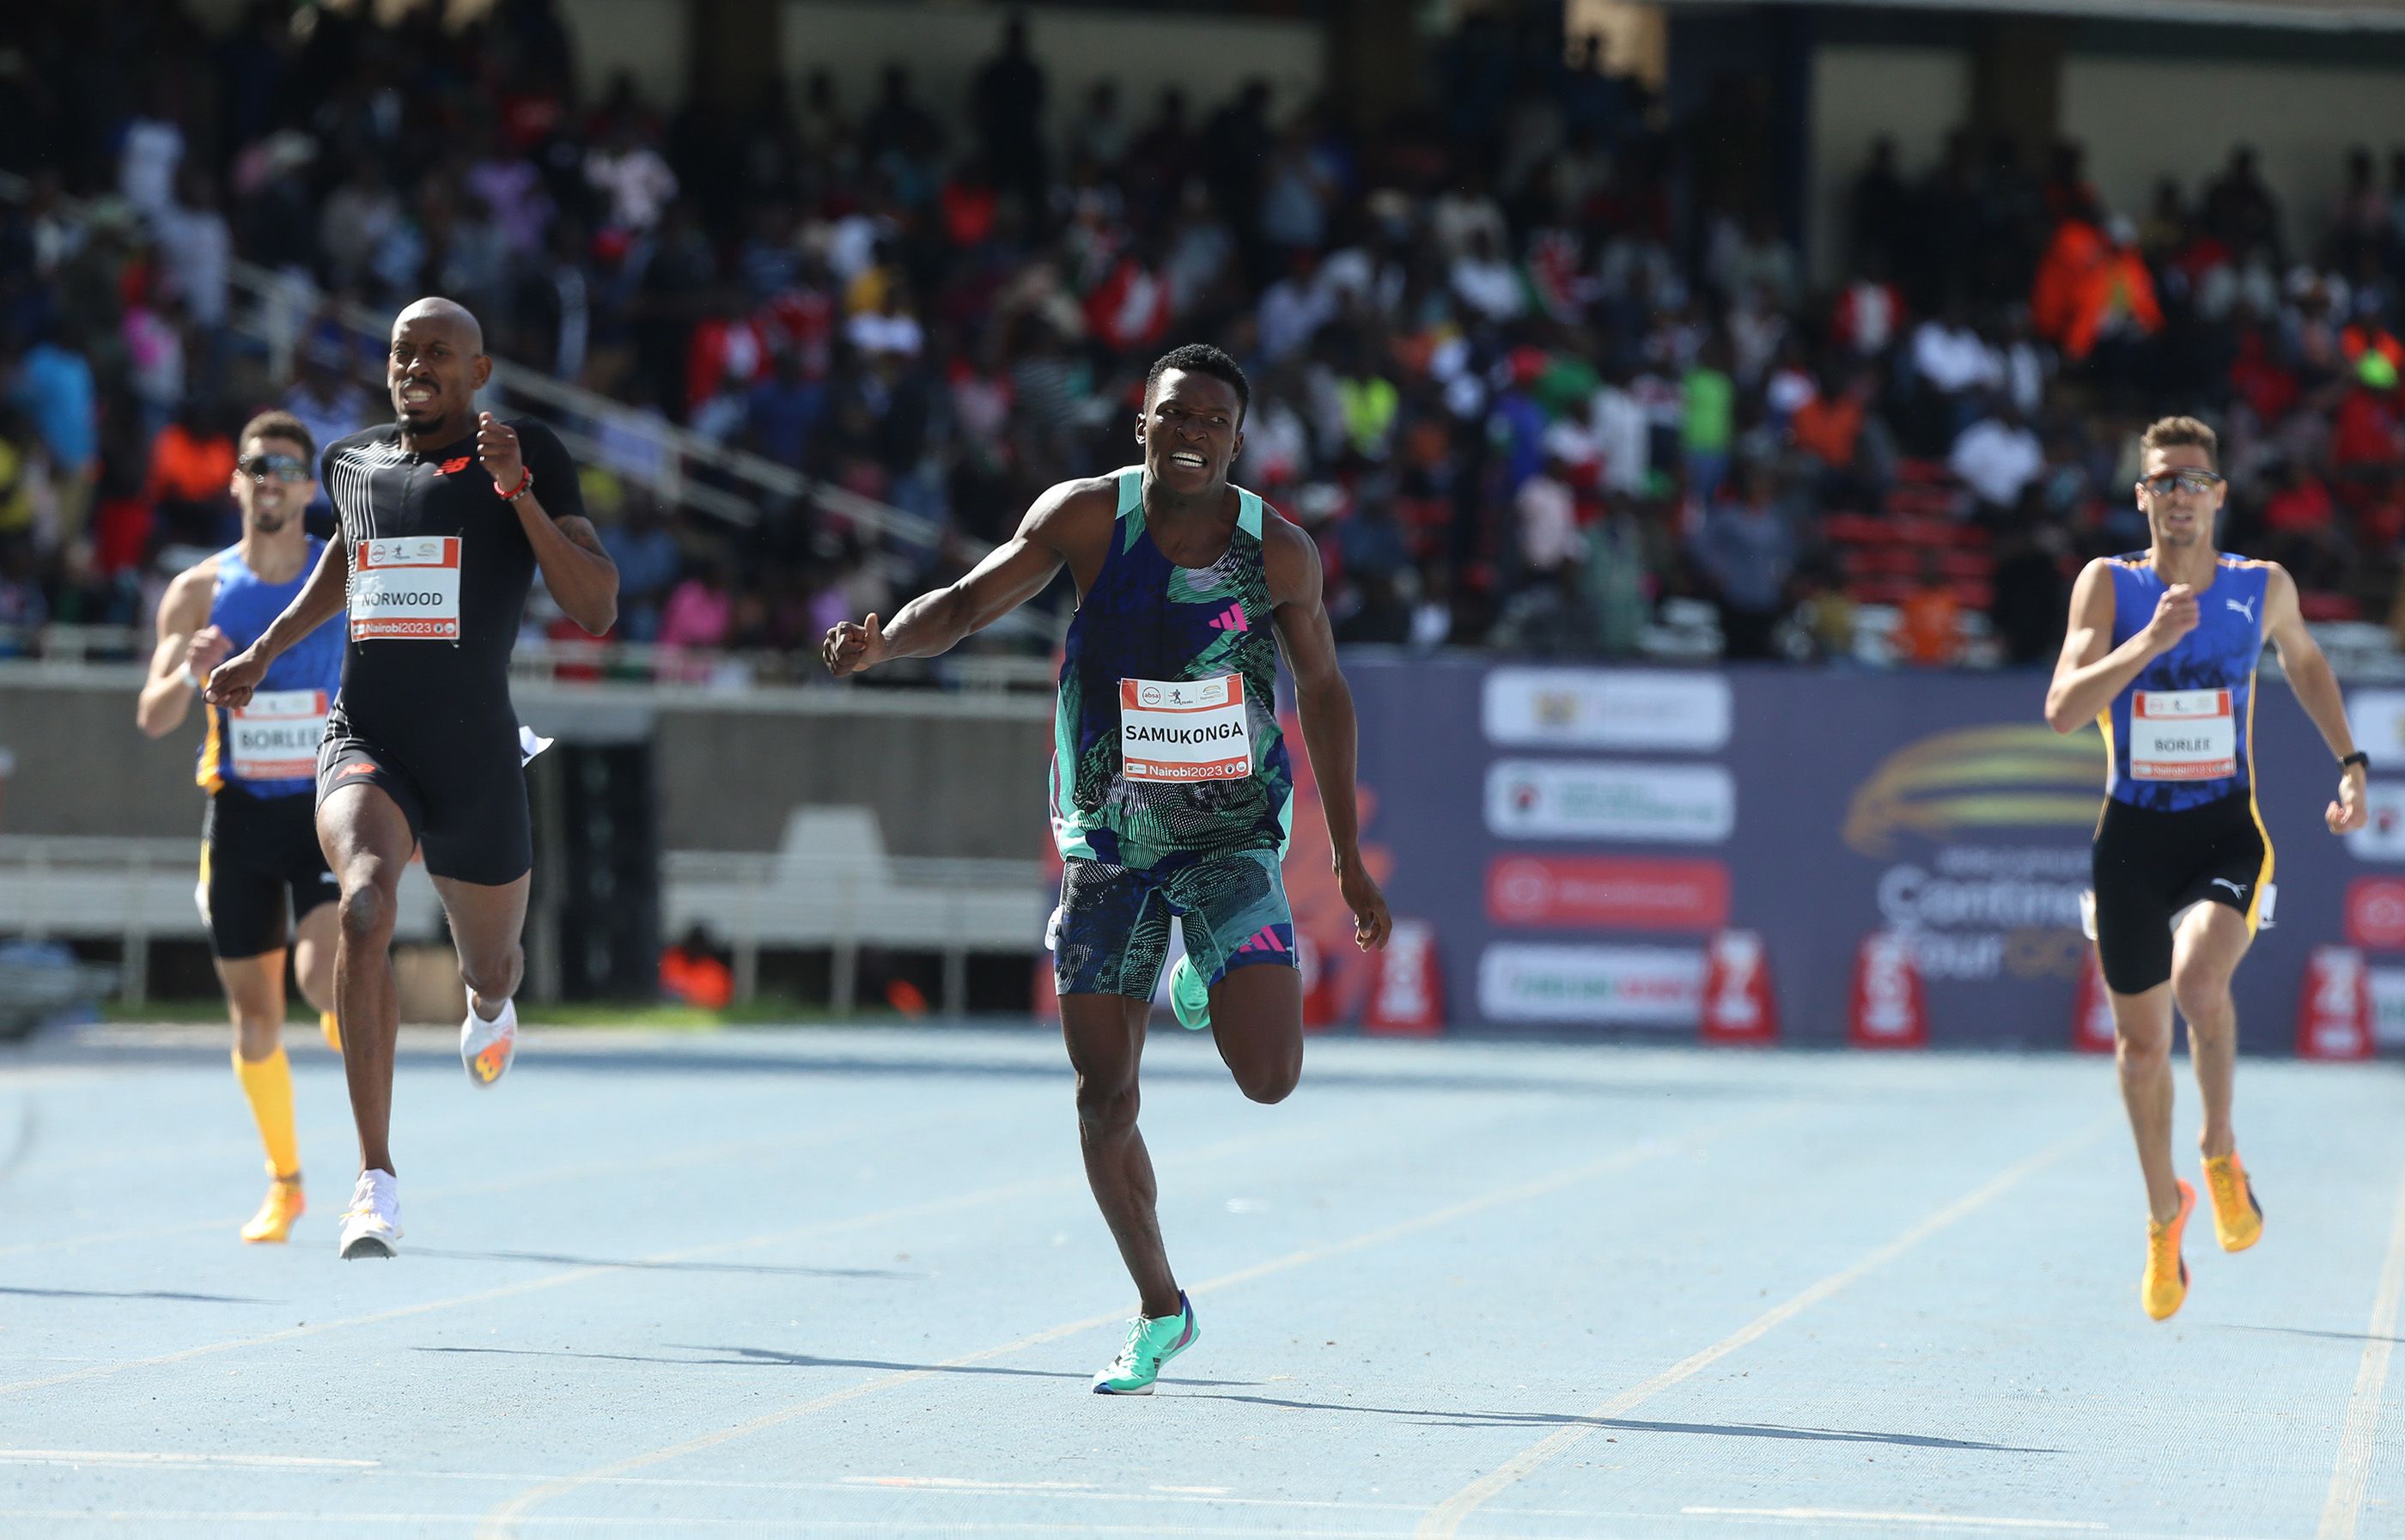 Muzala Samukonga wins the 400m at the Kip Keino Classic in Nairobi